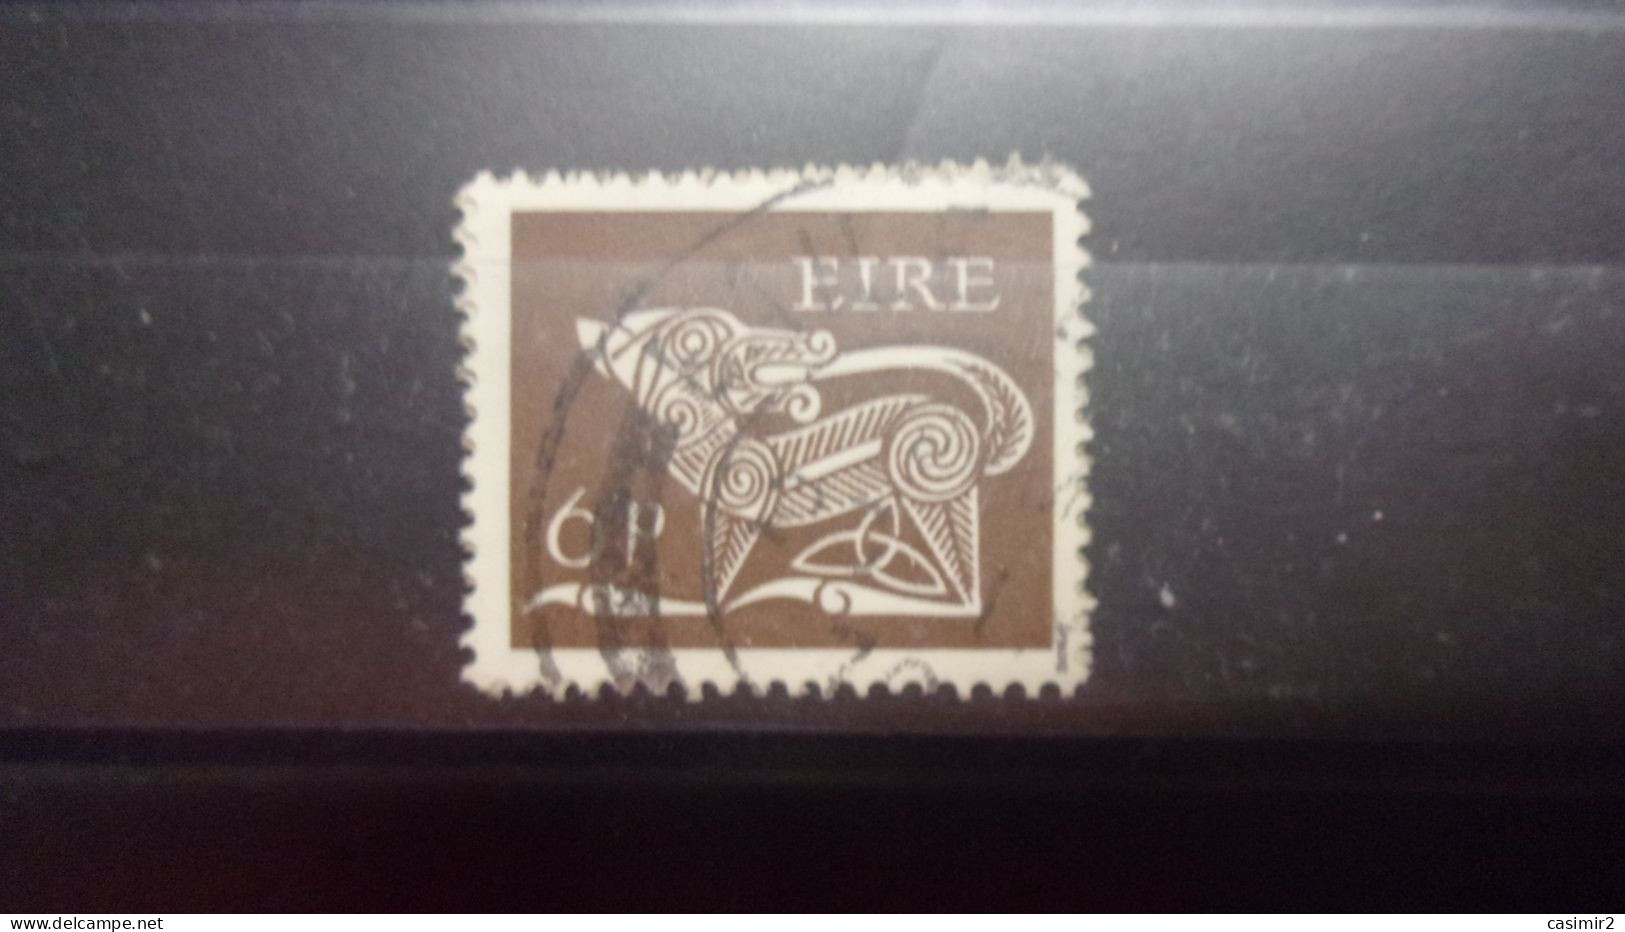 IRLANDE YVERT N°217 - Used Stamps